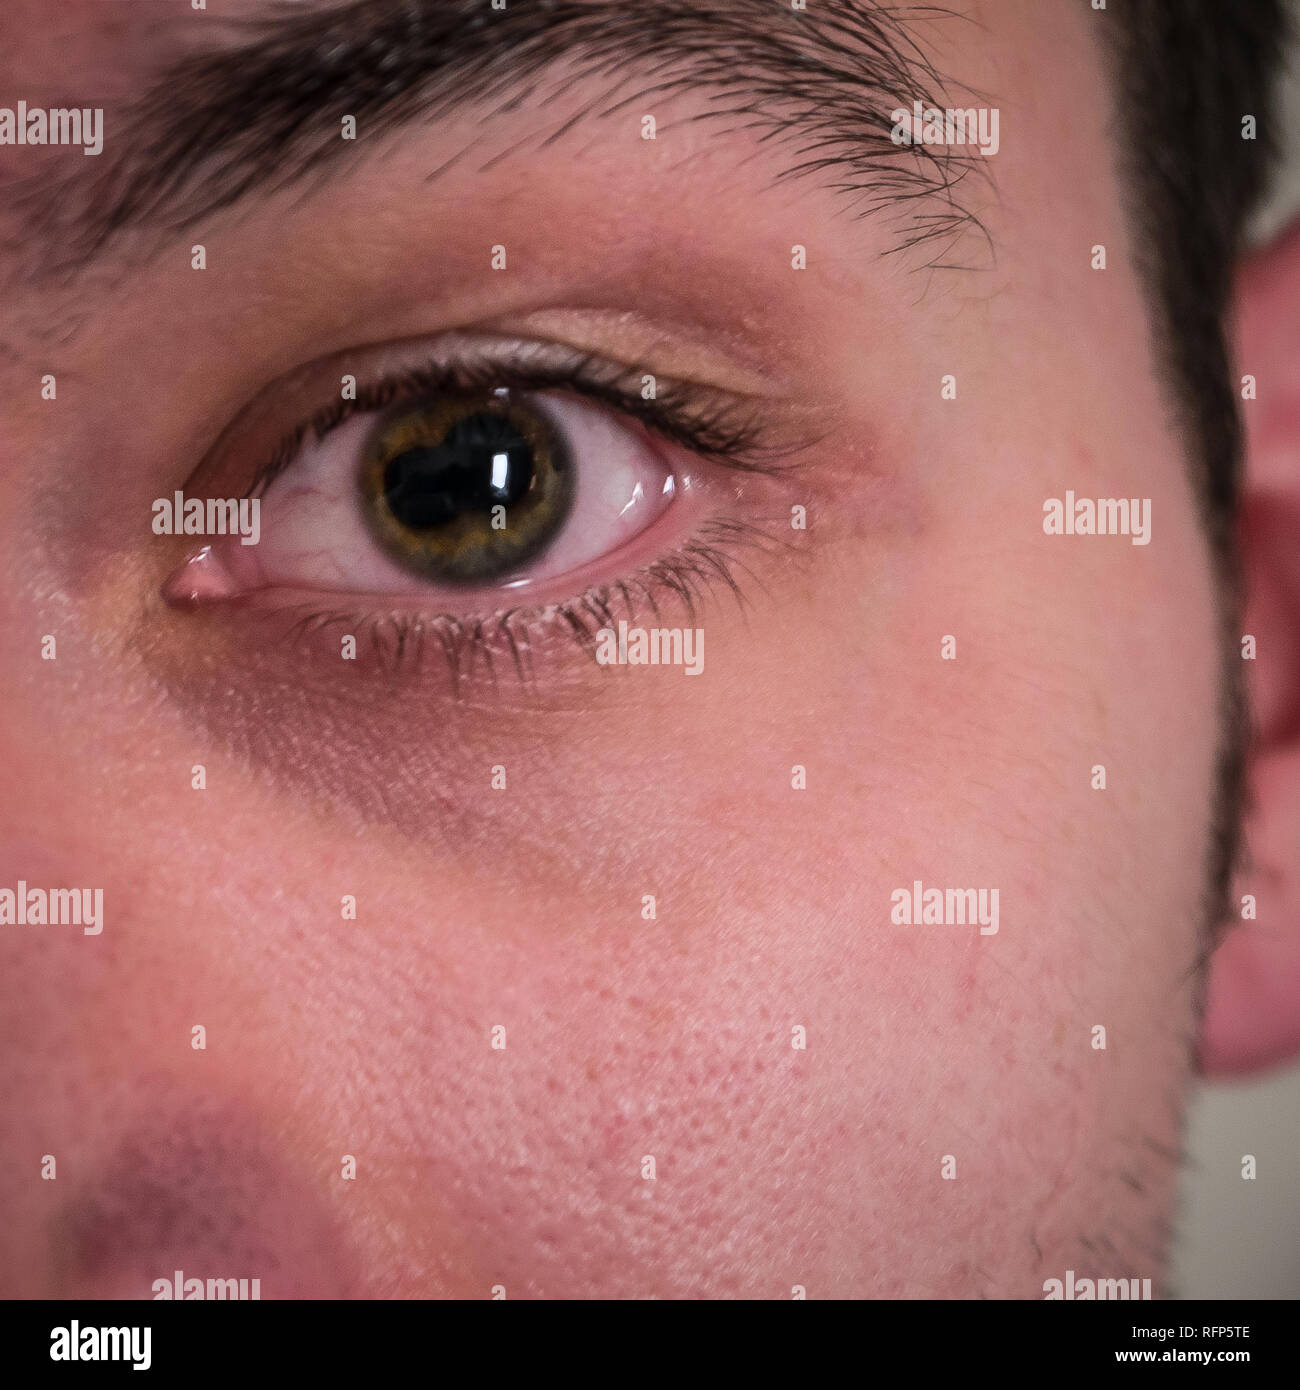 Libre d'hommes avec des yeux de l'élève divisé une iritis uveitis / maladie de l'oeil Banque D'Images